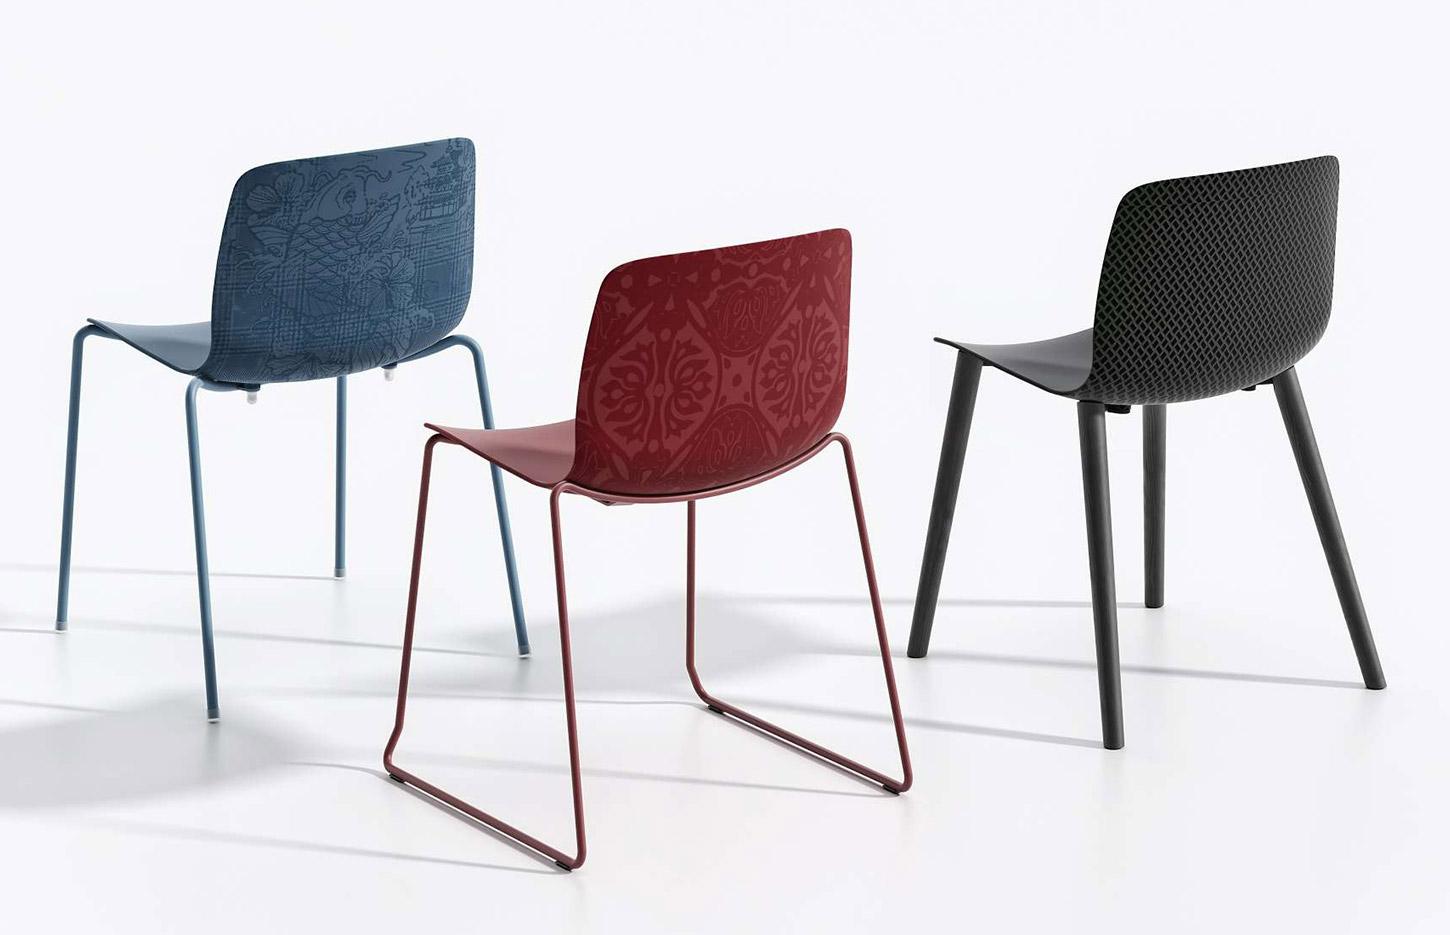 Chaise de collectivité coque polypro ou tapissée, chaise ou tabouret, gamme Yengo - France Bureau